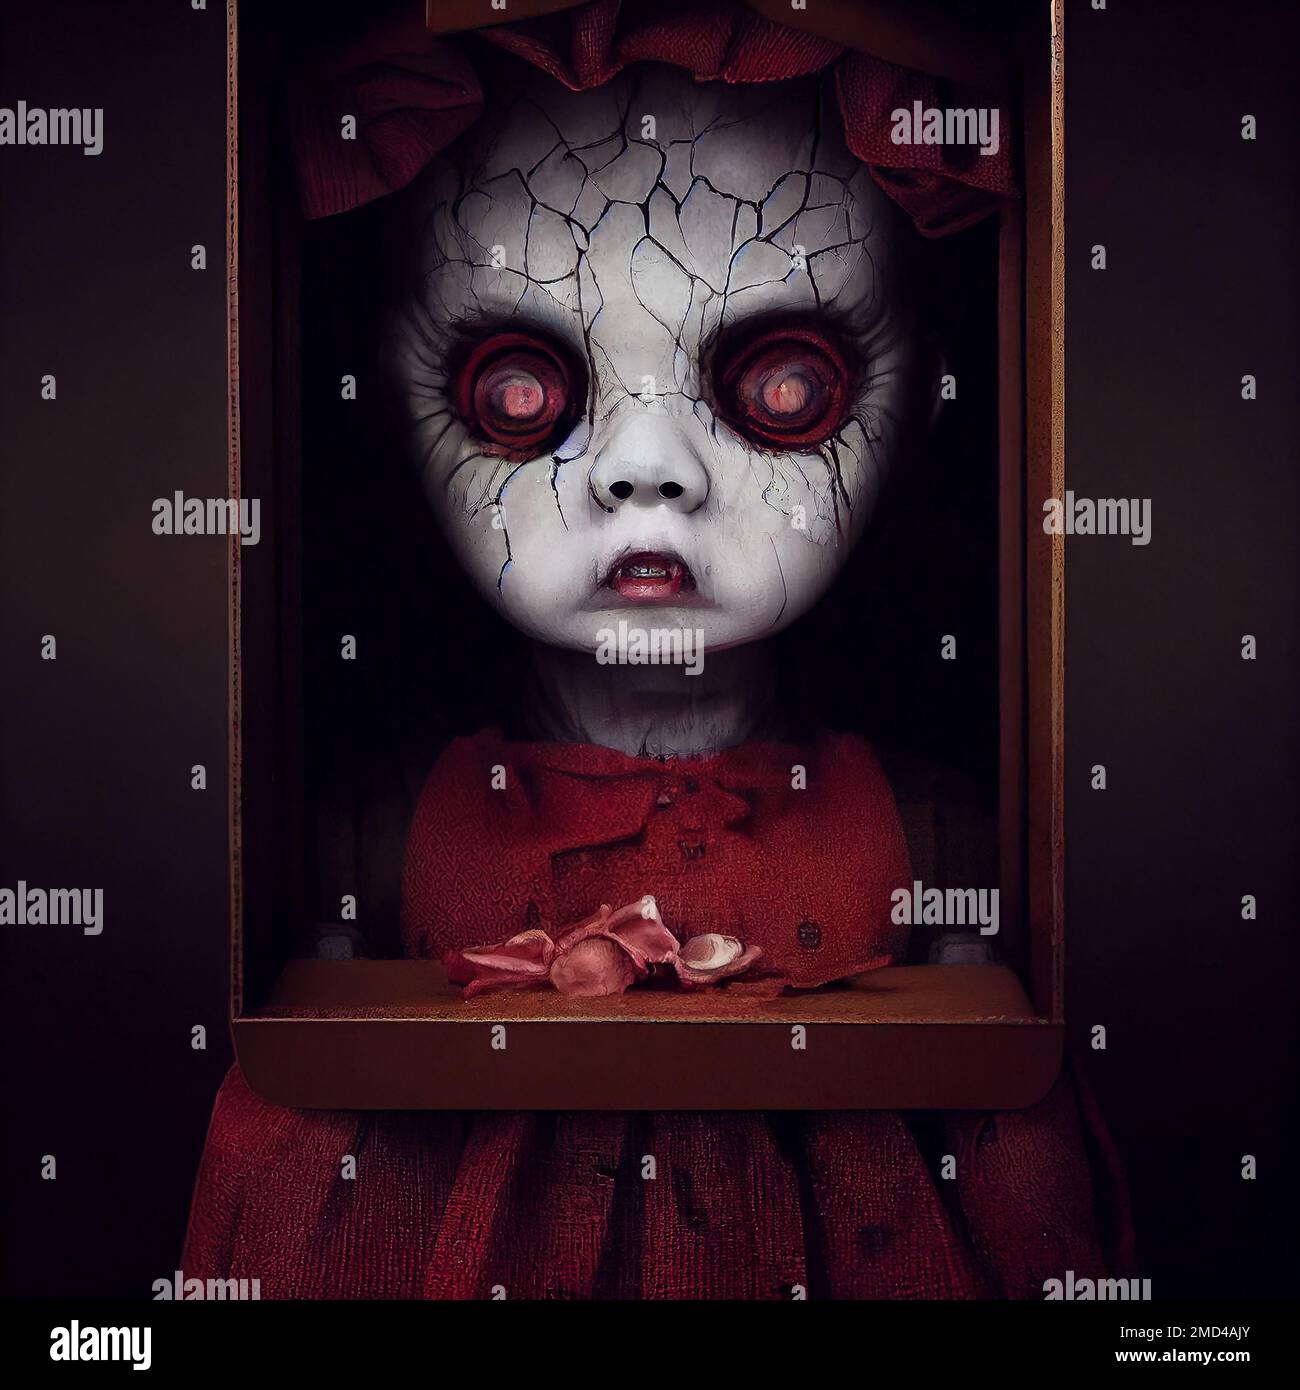 Horror doll house Stock Photo